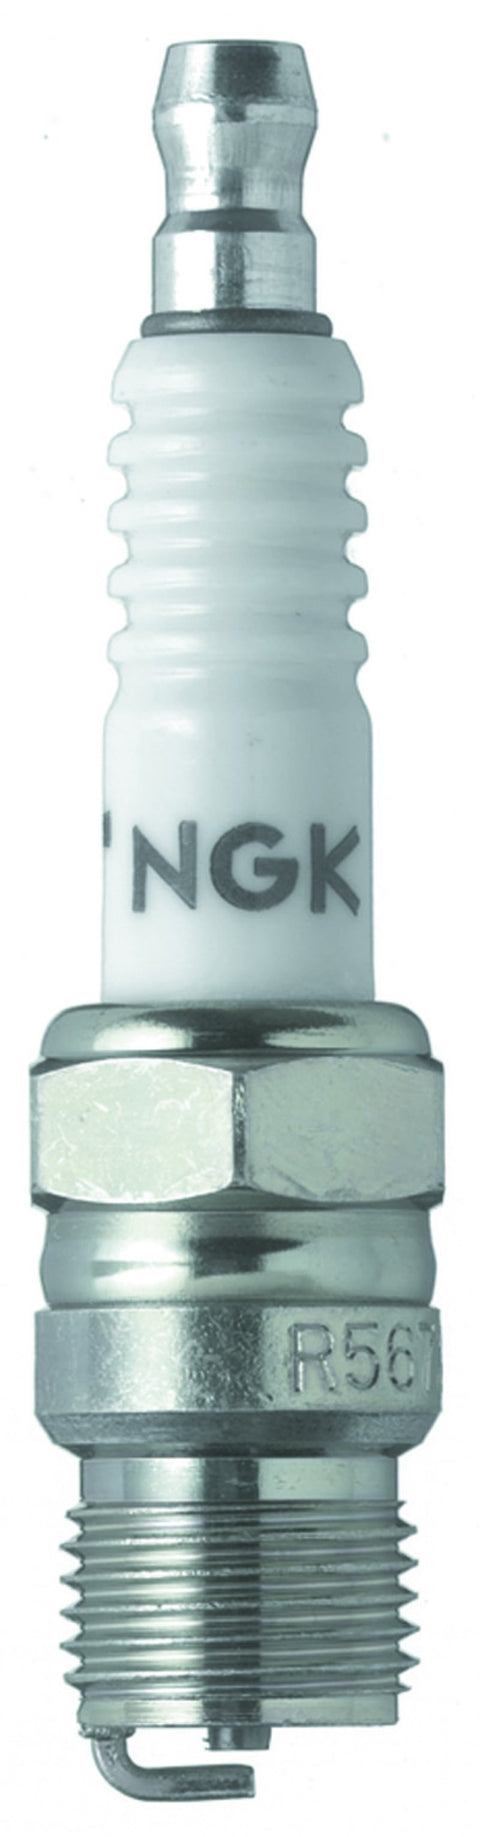 NGK Racing Spark Plug Box of 4 (2405)